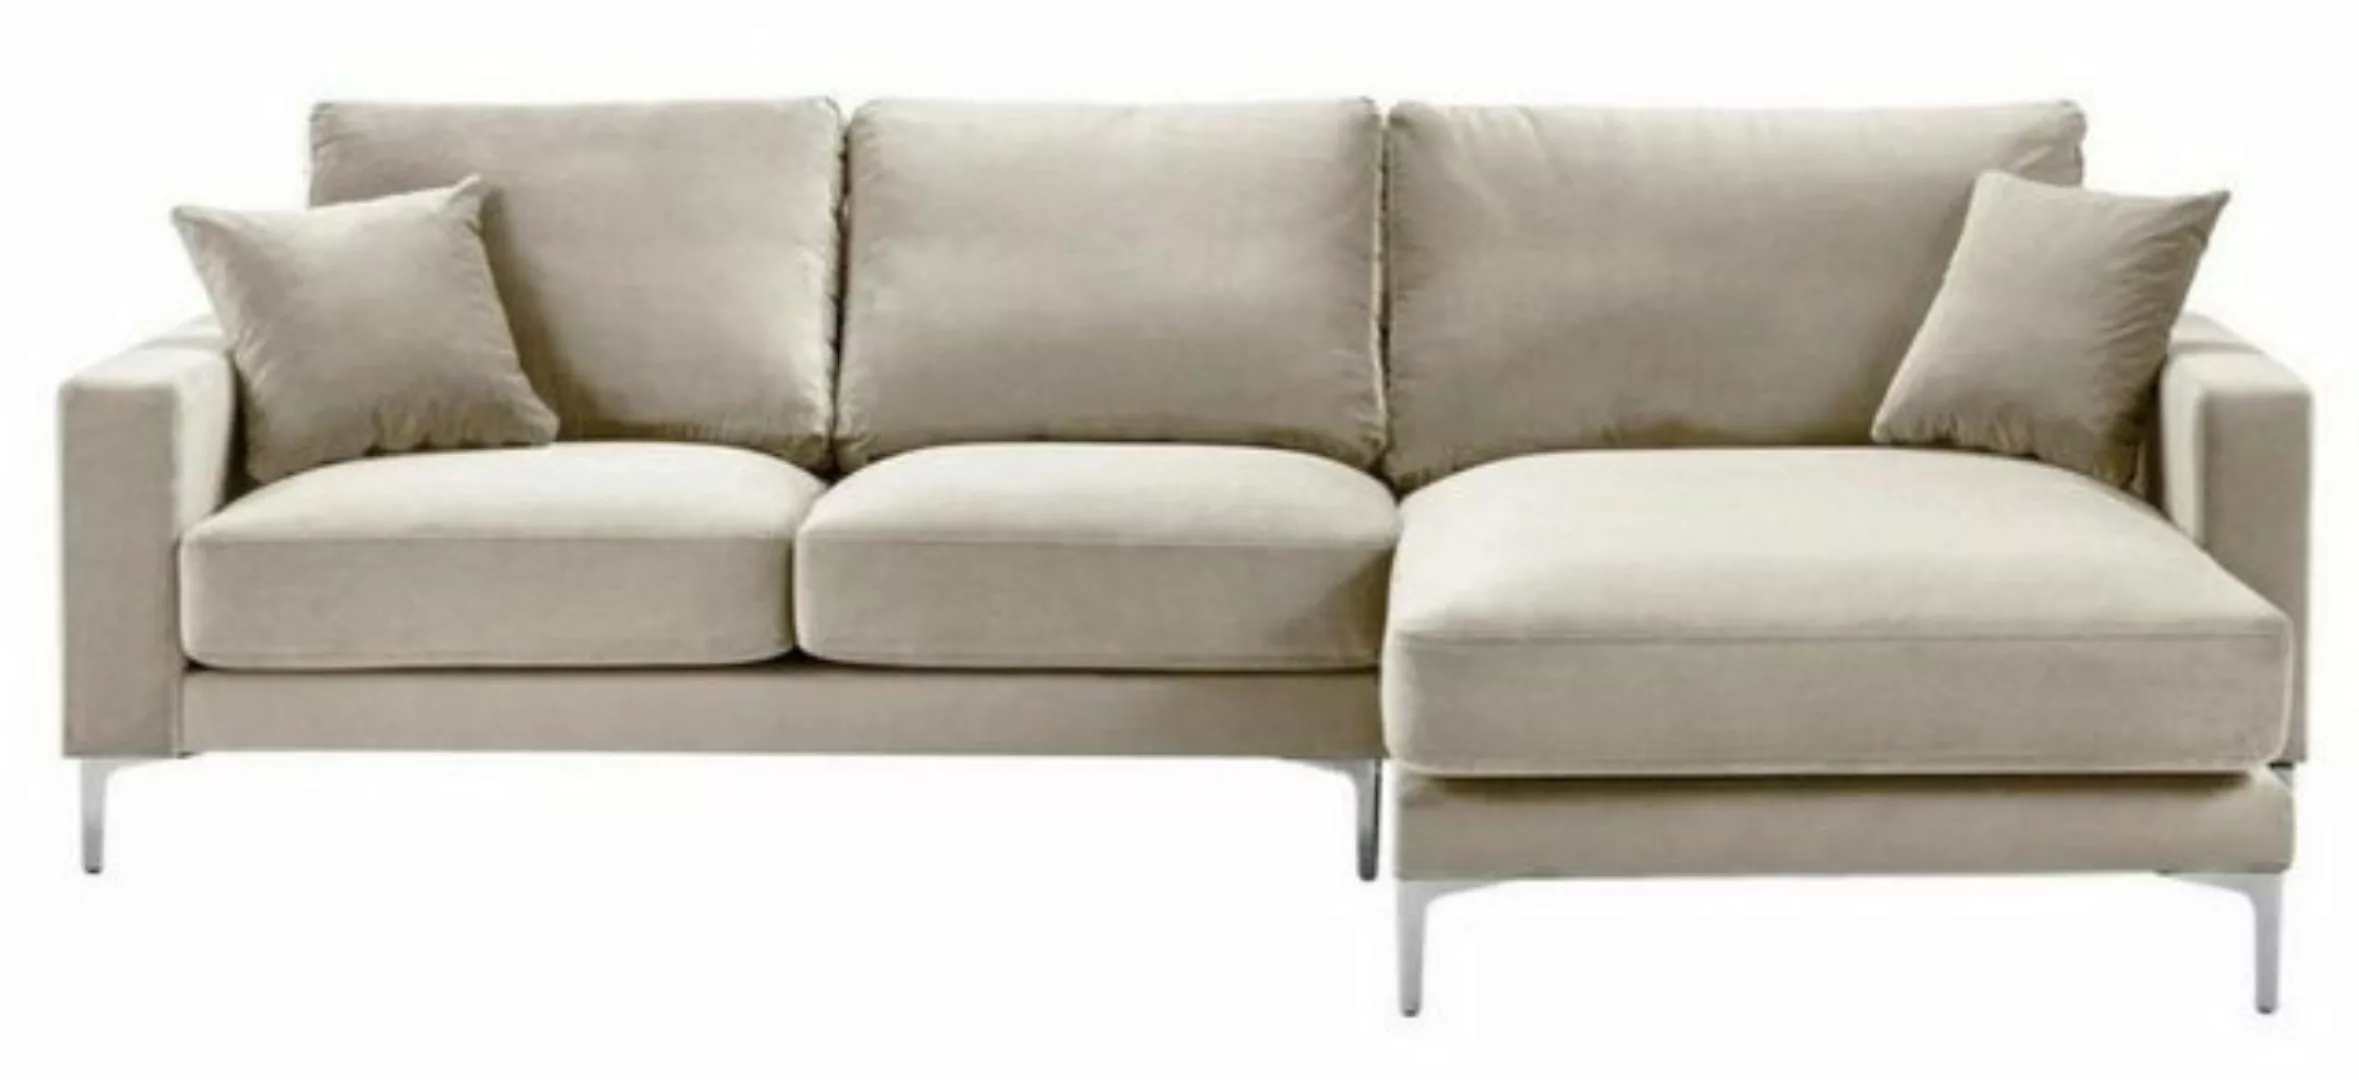 JVmoebel Ecksofa, Wohnzimmer Design Couchen Polster Sofa Couch Beige Ecksof günstig online kaufen